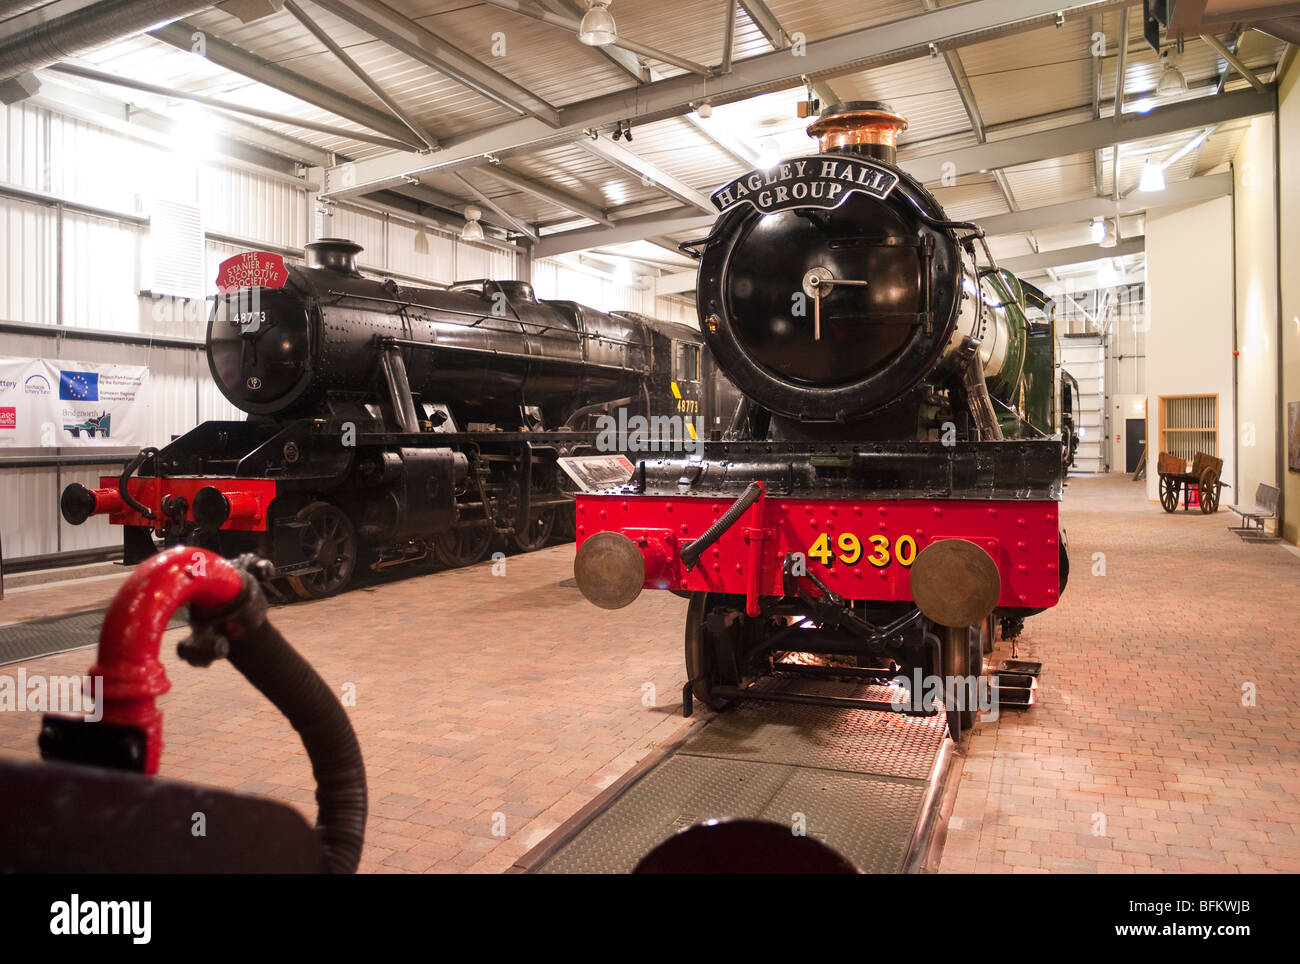 No 4930 Hagley Hall et d'autres vieilles locomotives à vapeur conservés dans le centre de visiteurs à Worcestershire England UK Shrewsbury Banque D'Images